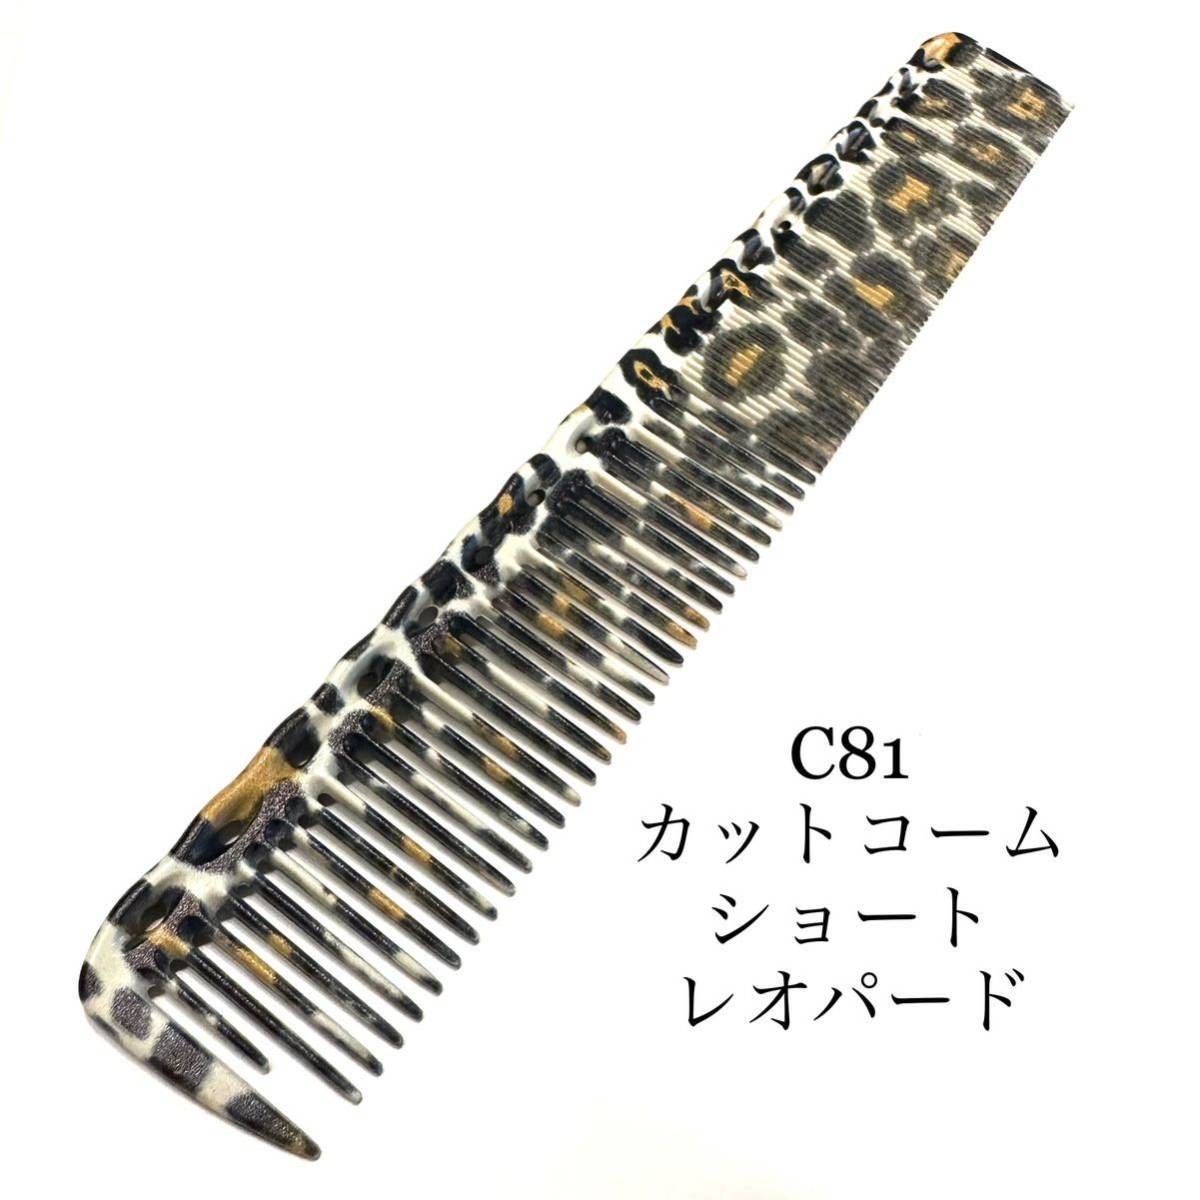  new goods leopard print Leopard cut comb Short Barber beauty comb comb hair care beauty . Barber .